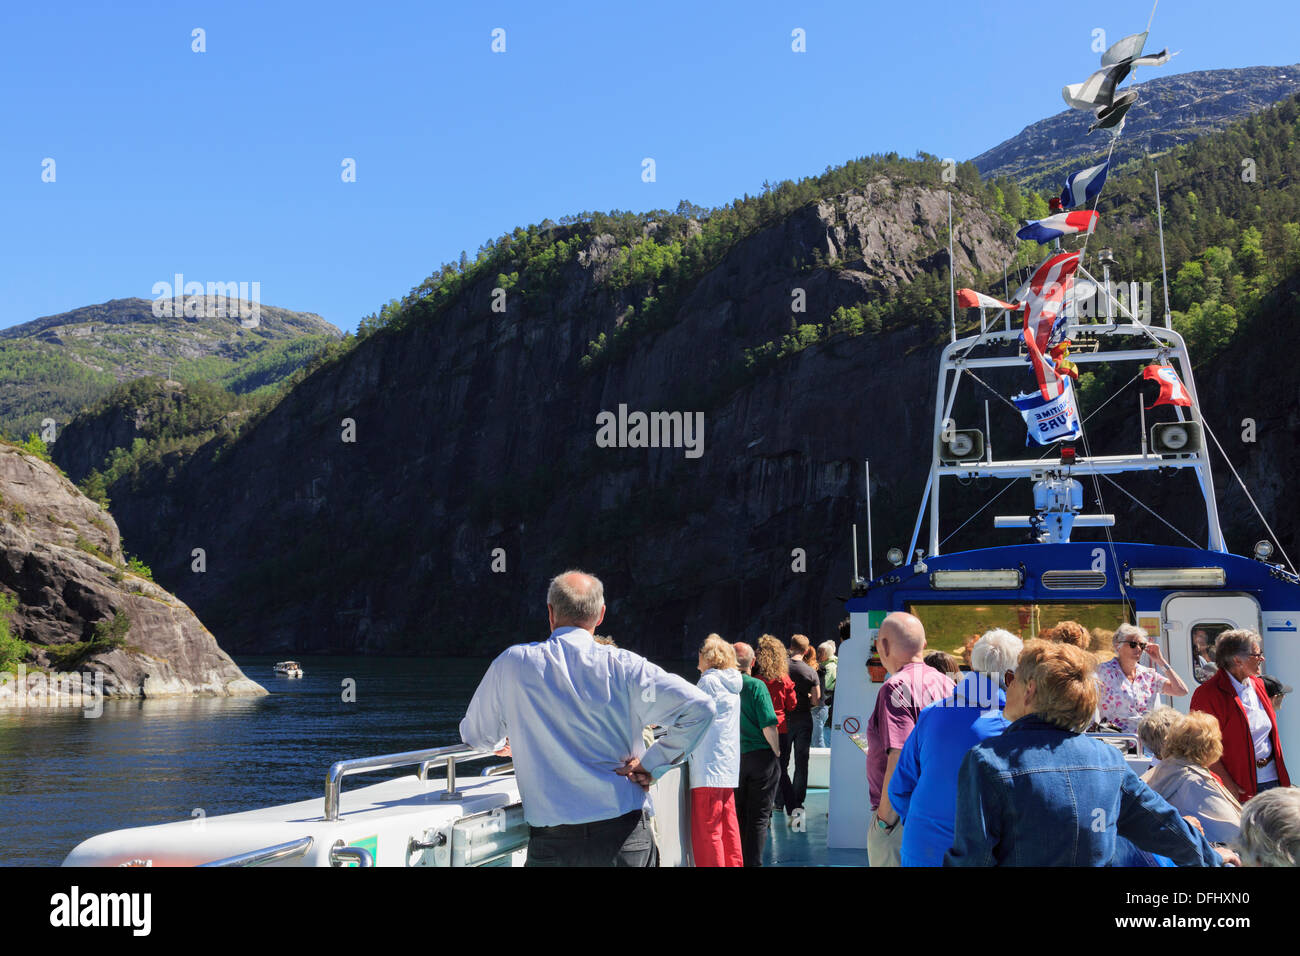 Les touristes sur le pont d'un bateau de croisière touristique le long Mofjorden étroit fjord de Bergen. Modalen, Hordaland, Norvège, Scandinavie Banque D'Images